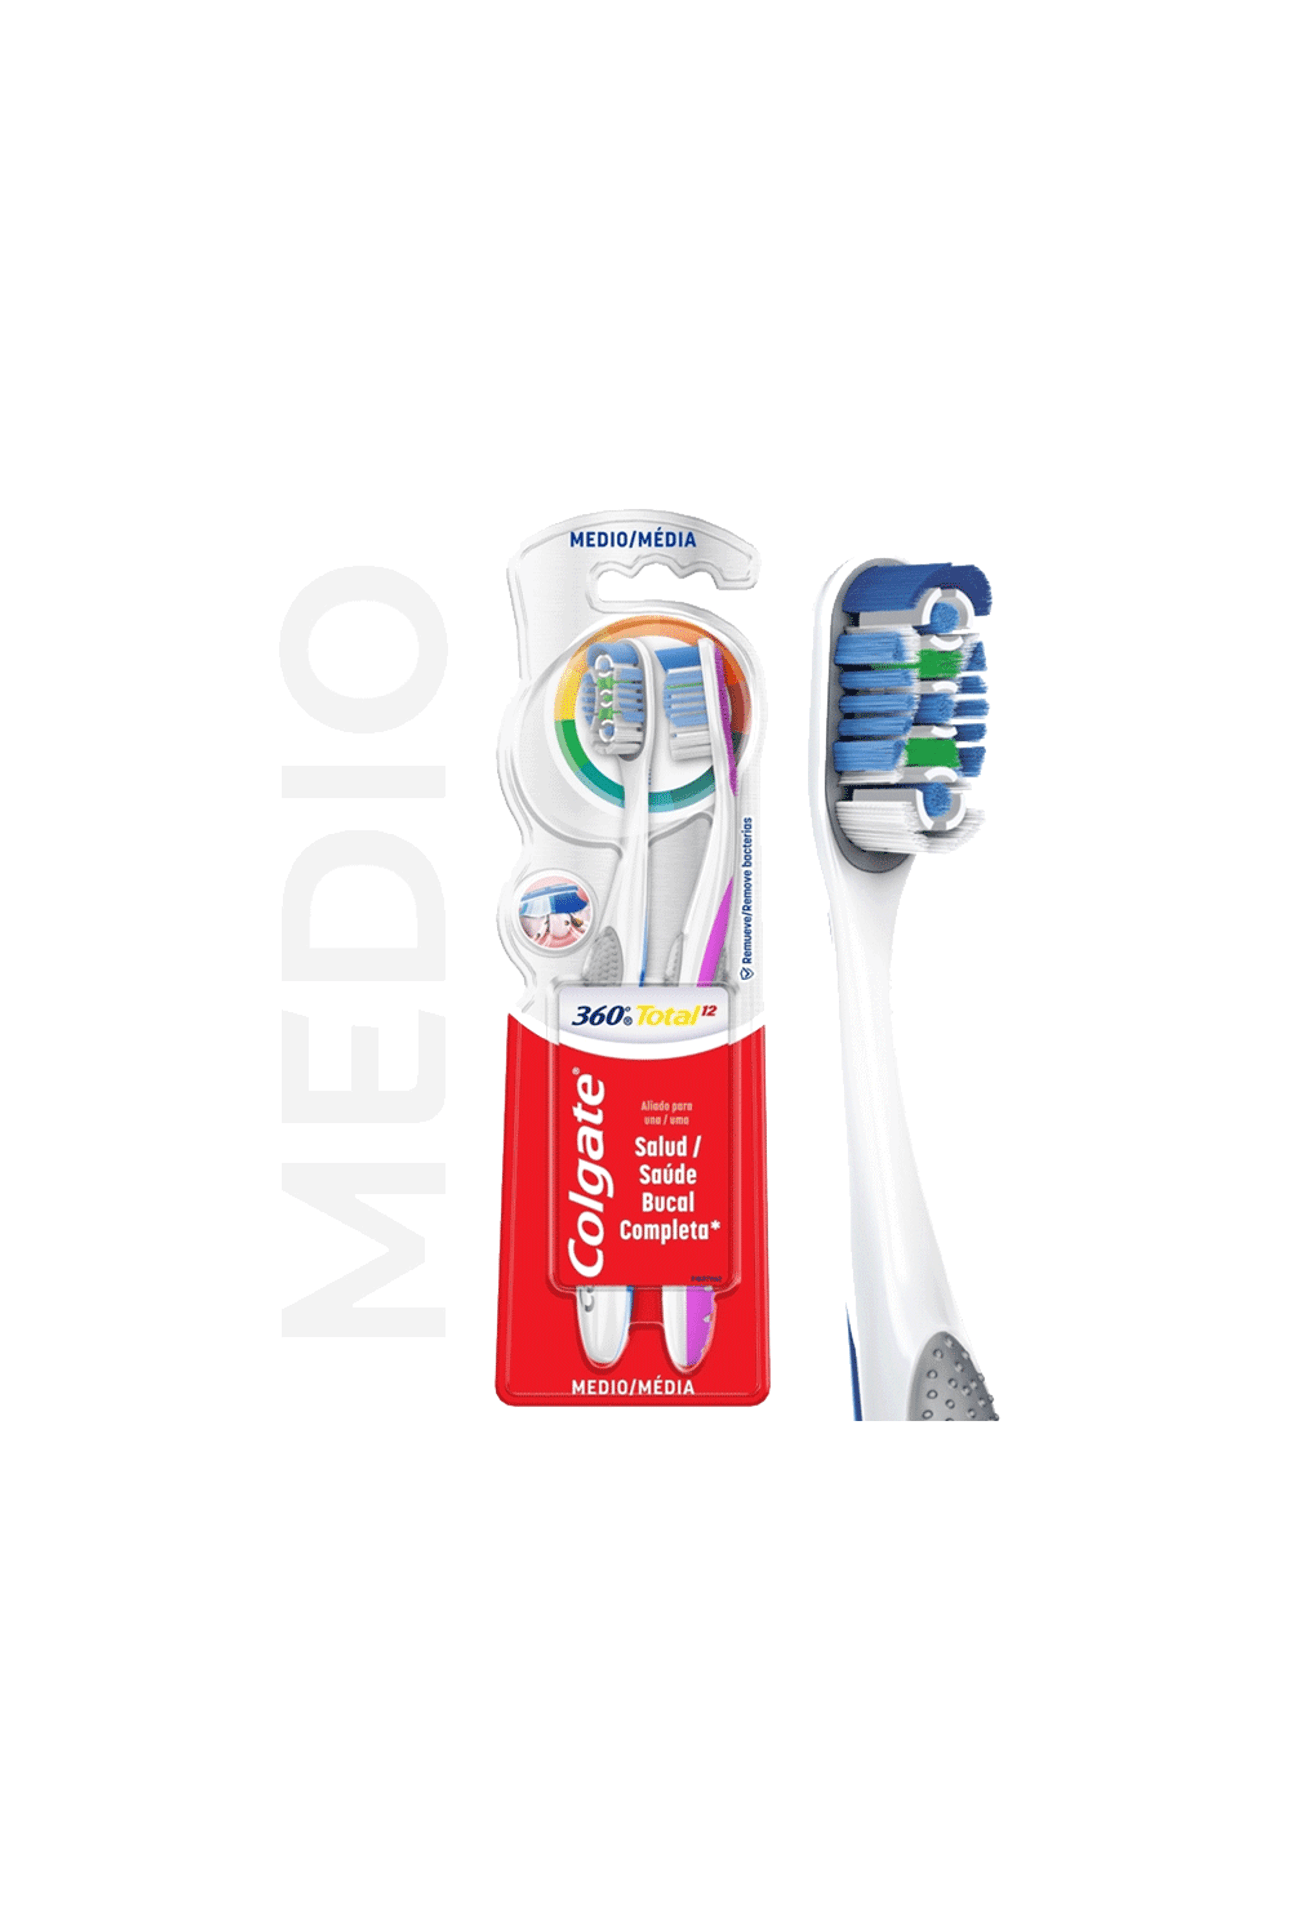 Cabezales Repuesto Cepillo Eléctrico Dental Pro-Salud CrossActios x 2 unid  - farmaciasdelpueblo